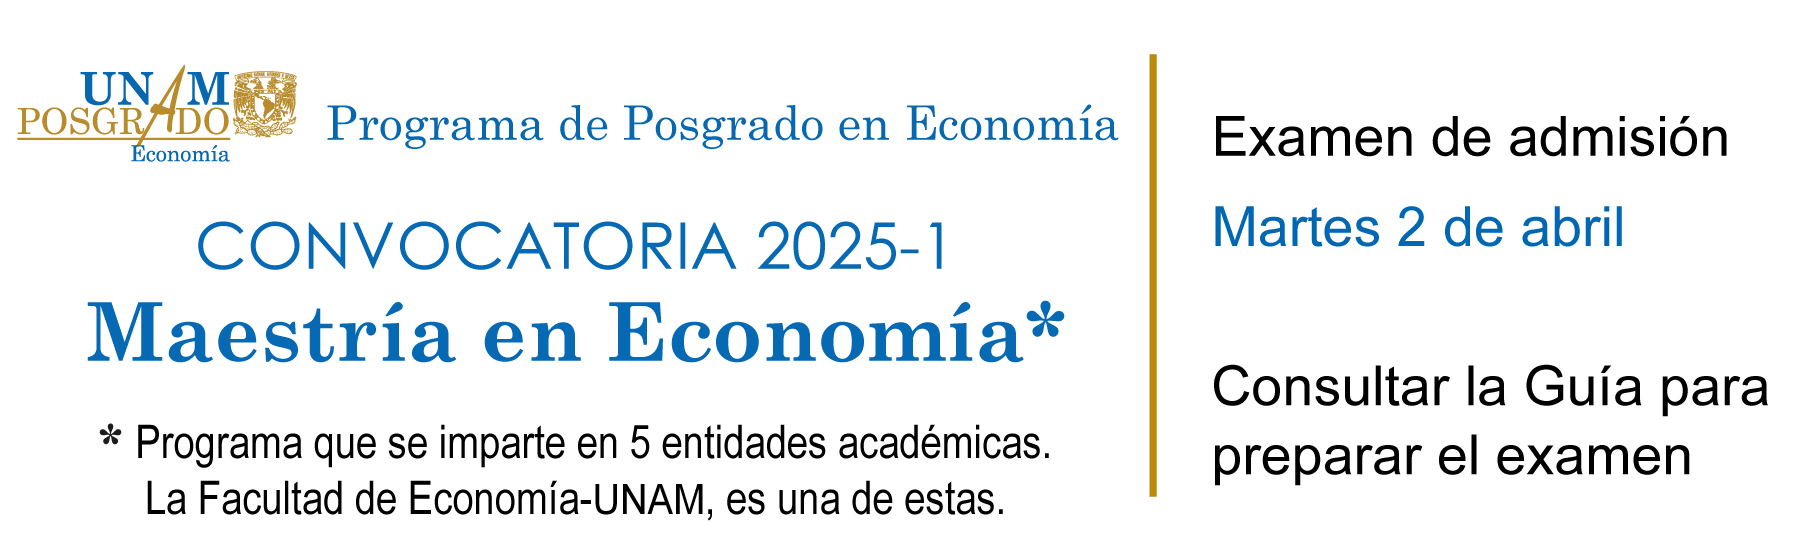 Convocatoria de ingreso a la Maestría en Economía, 2025-1